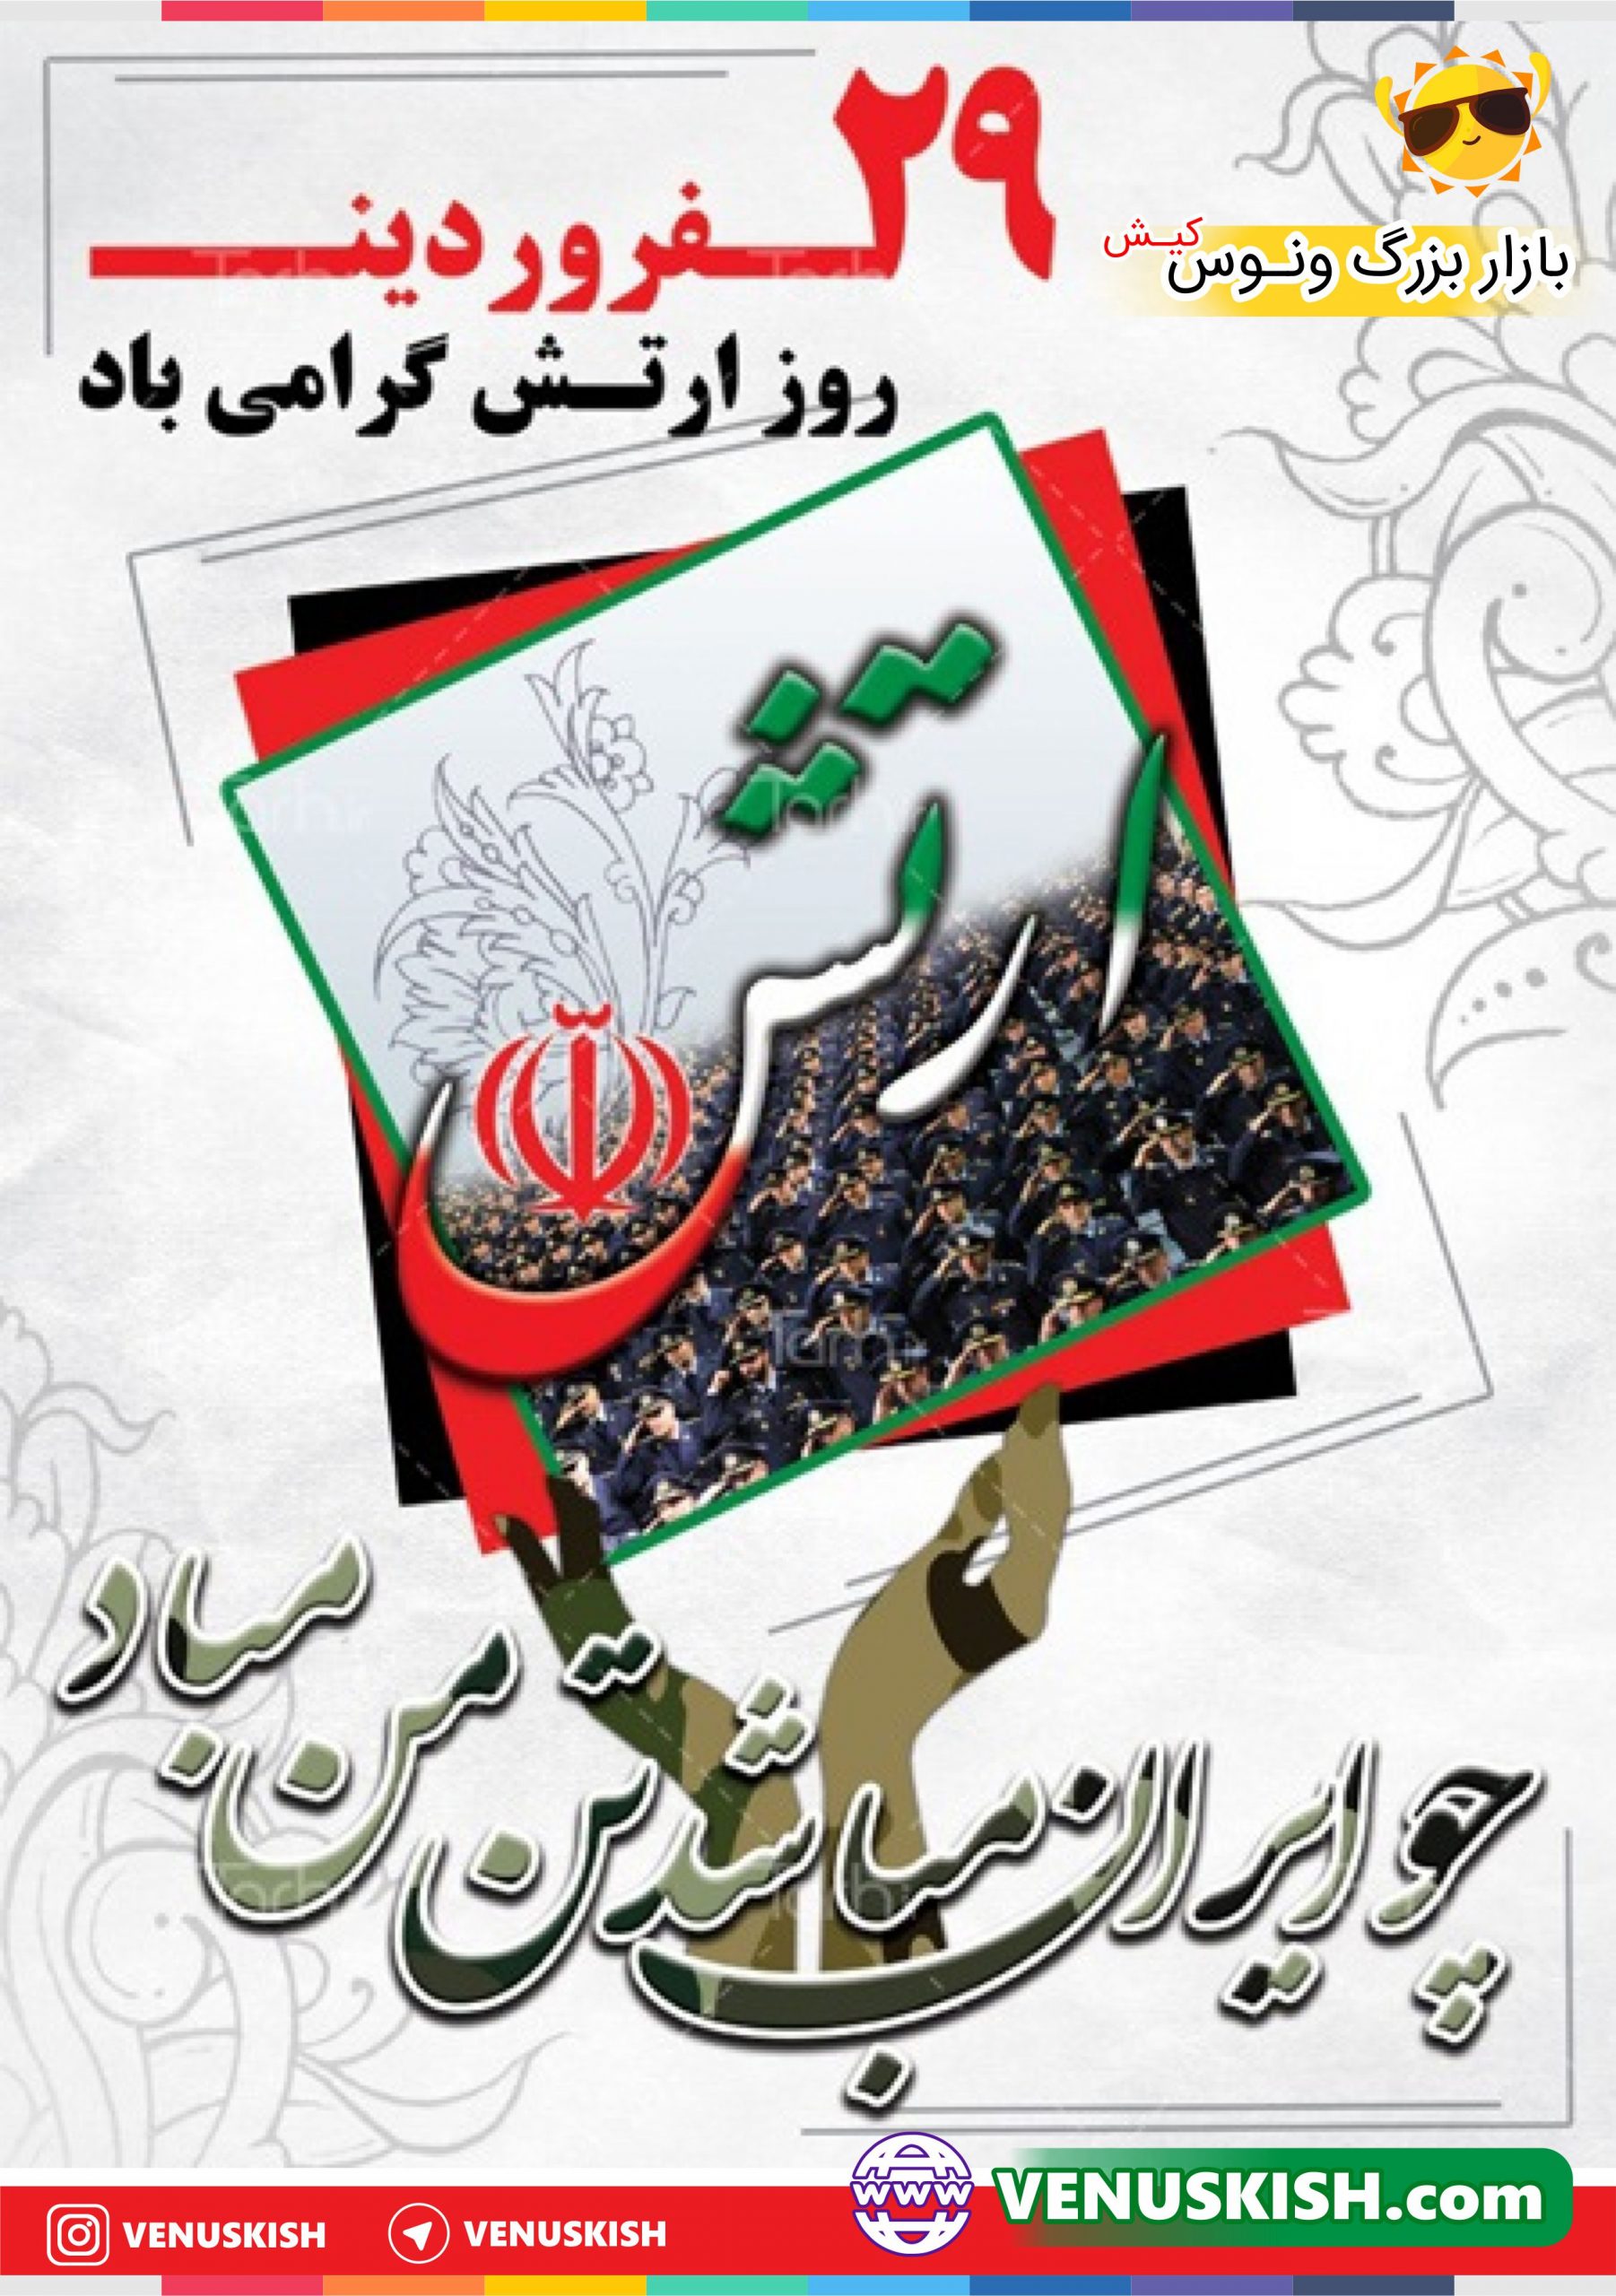 29 فروردین ماه روز ارتش جمهوری اسلامی و نیروی زمینی گرامی باد.